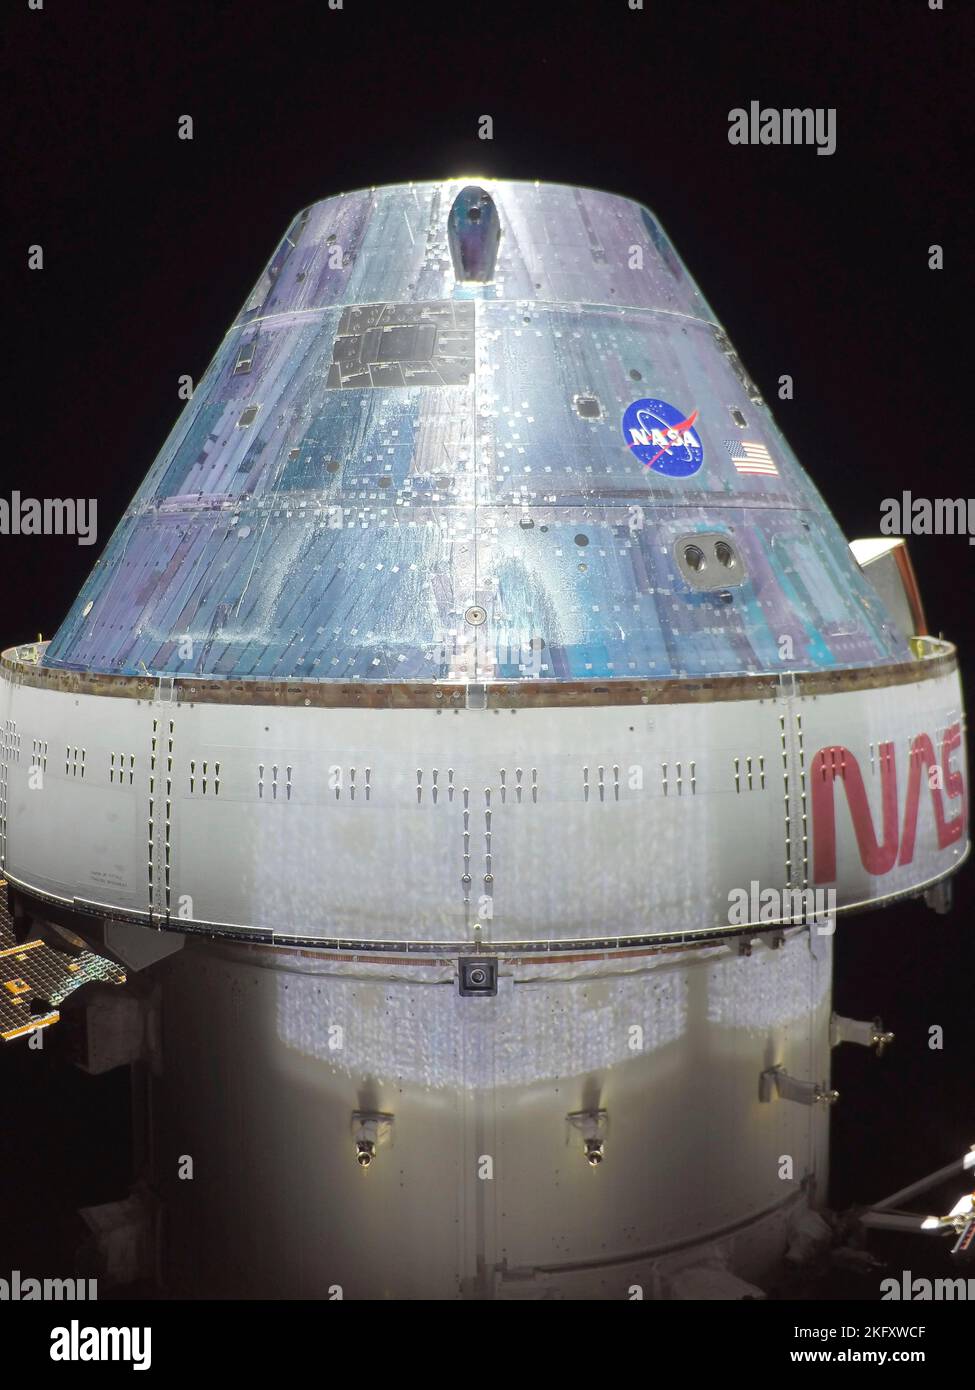 Orbite de la terre, orbite de la terre. 18 novembre 2022. Selfie de la capsule d'équipage Orion en voyage sur la lune, le troisième jour de vol de la mission Artemis I de la NASA, 18 novembre 2022, dans l'orbite terrestre. L'image a été capturée par une caméra à la pointe de l'un des panneaux solaires alors qu'elle se trouvait à 57 000 kilomètres de la Terre. Credit: NASA/NASA/Alamy Live News Banque D'Images